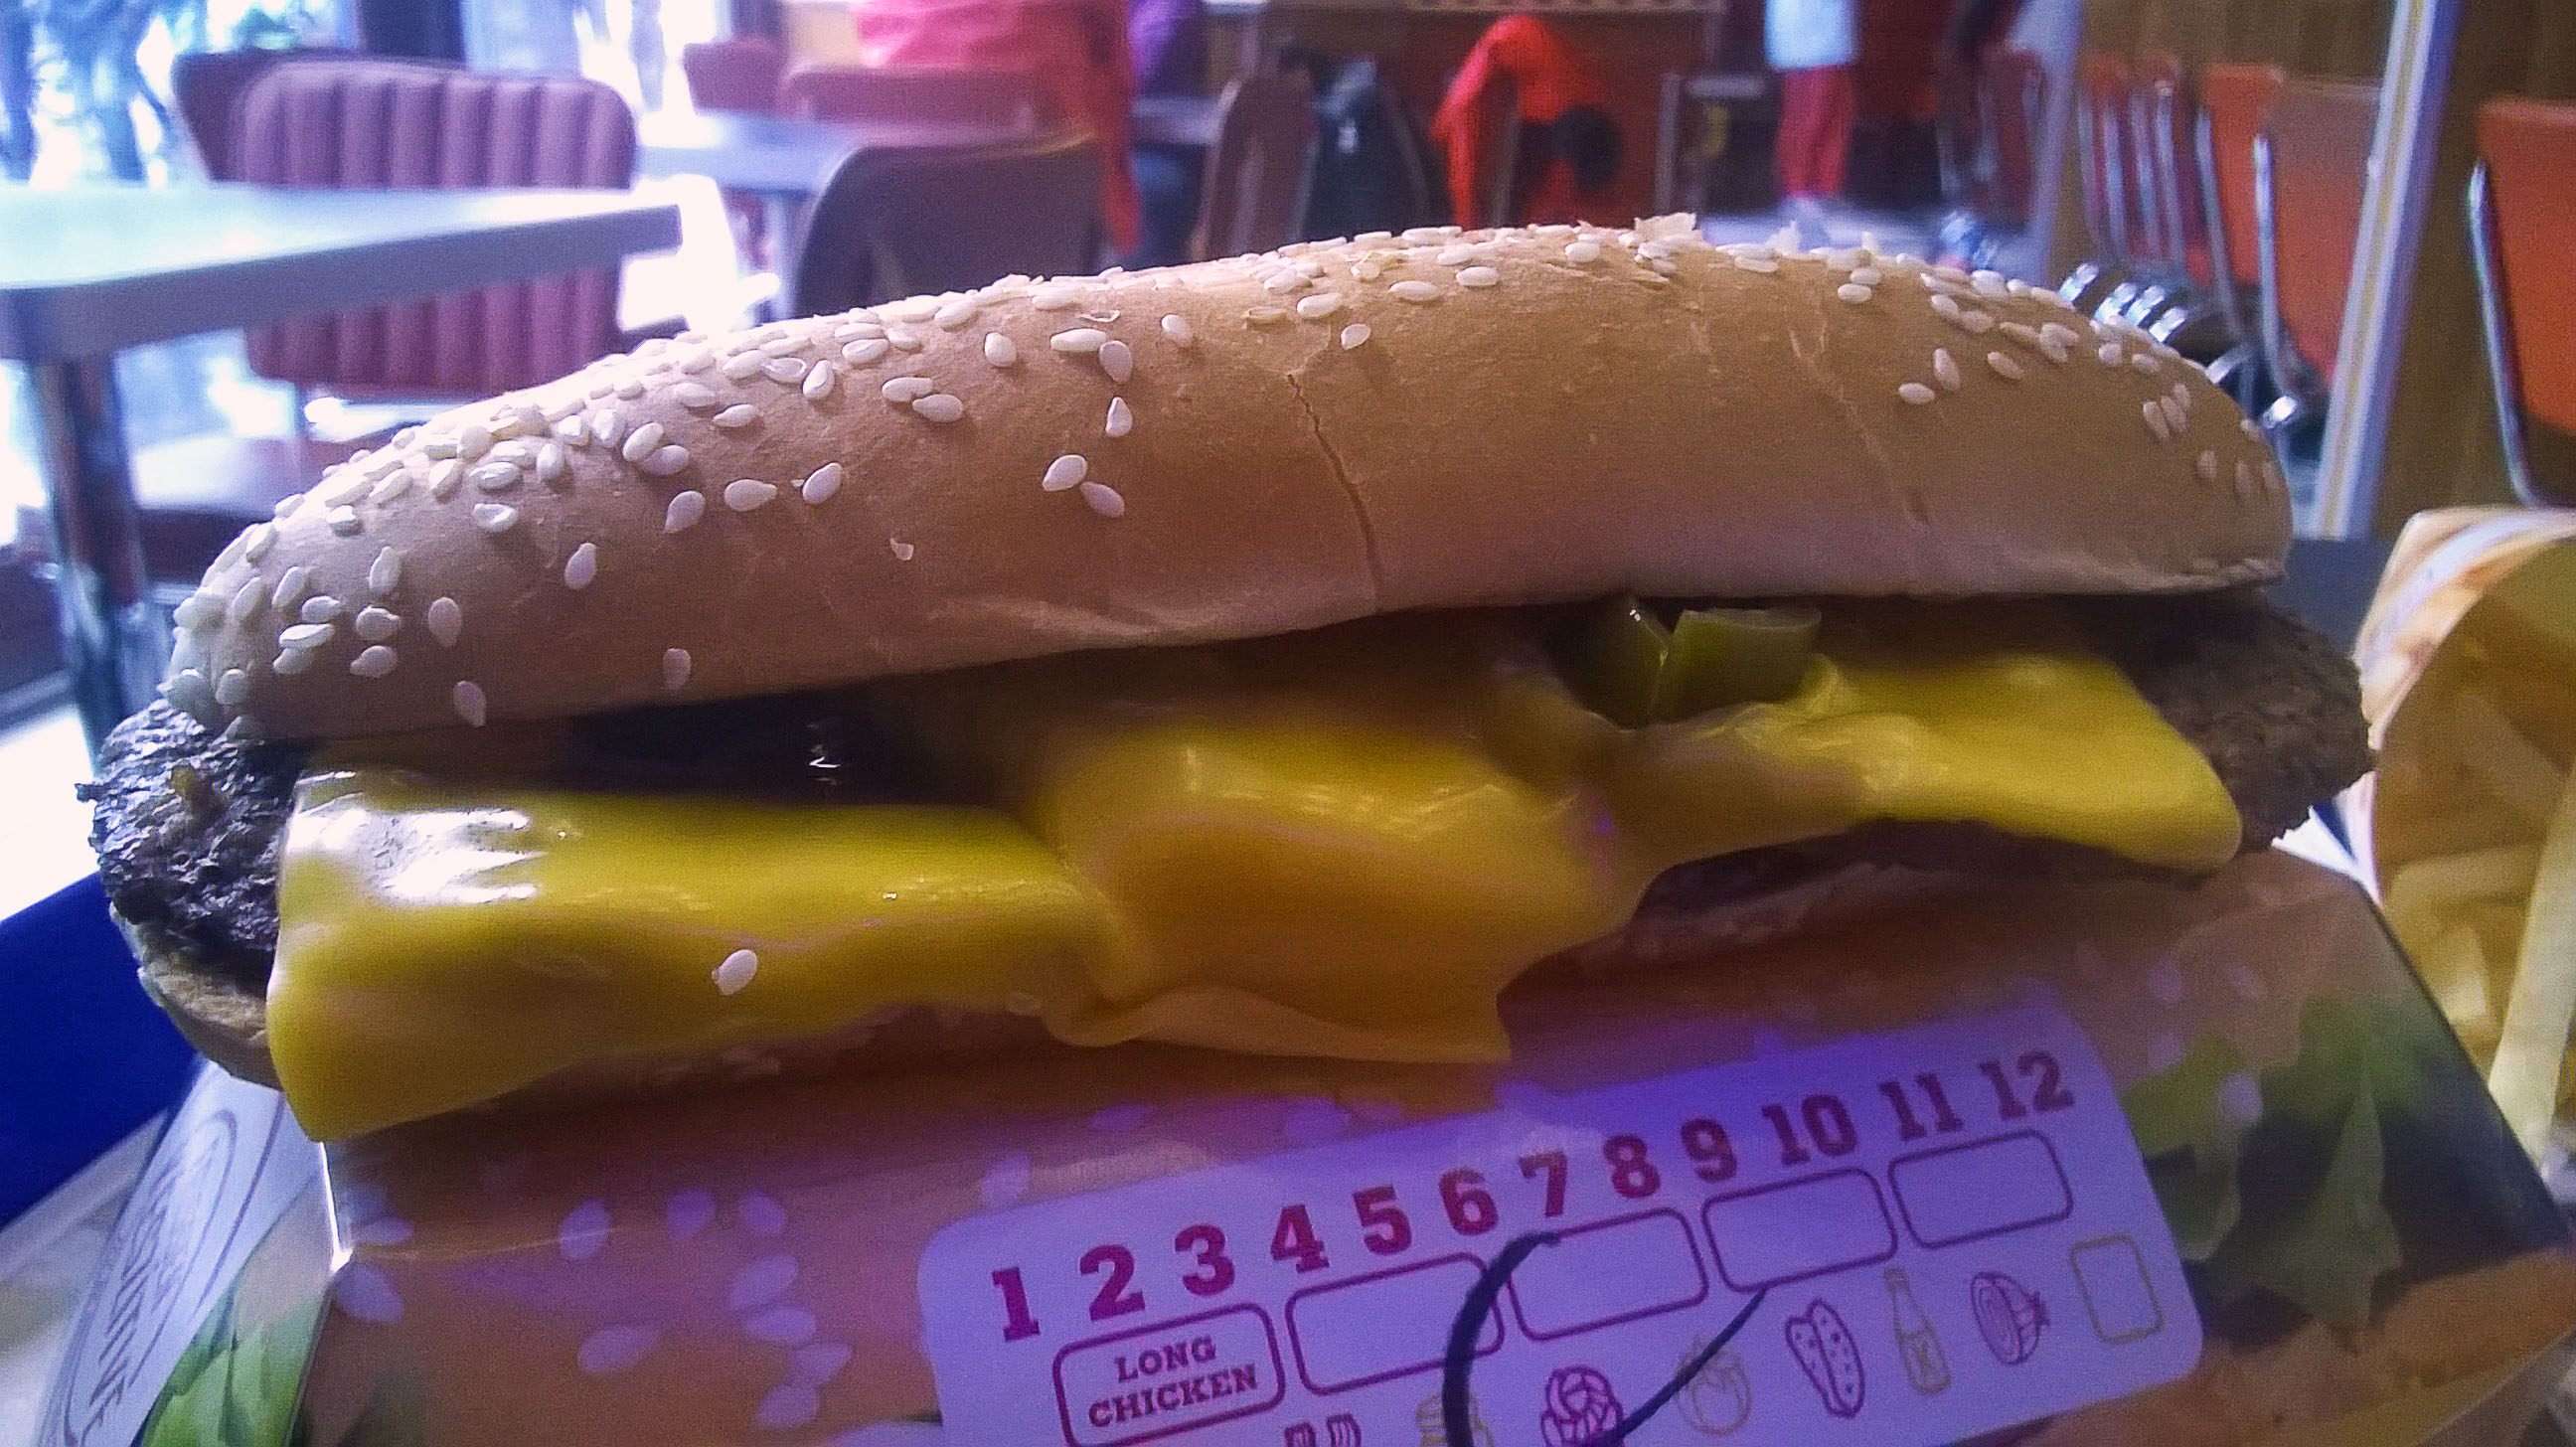 burger_king_xtra_long_chili_cheese_1.jpg